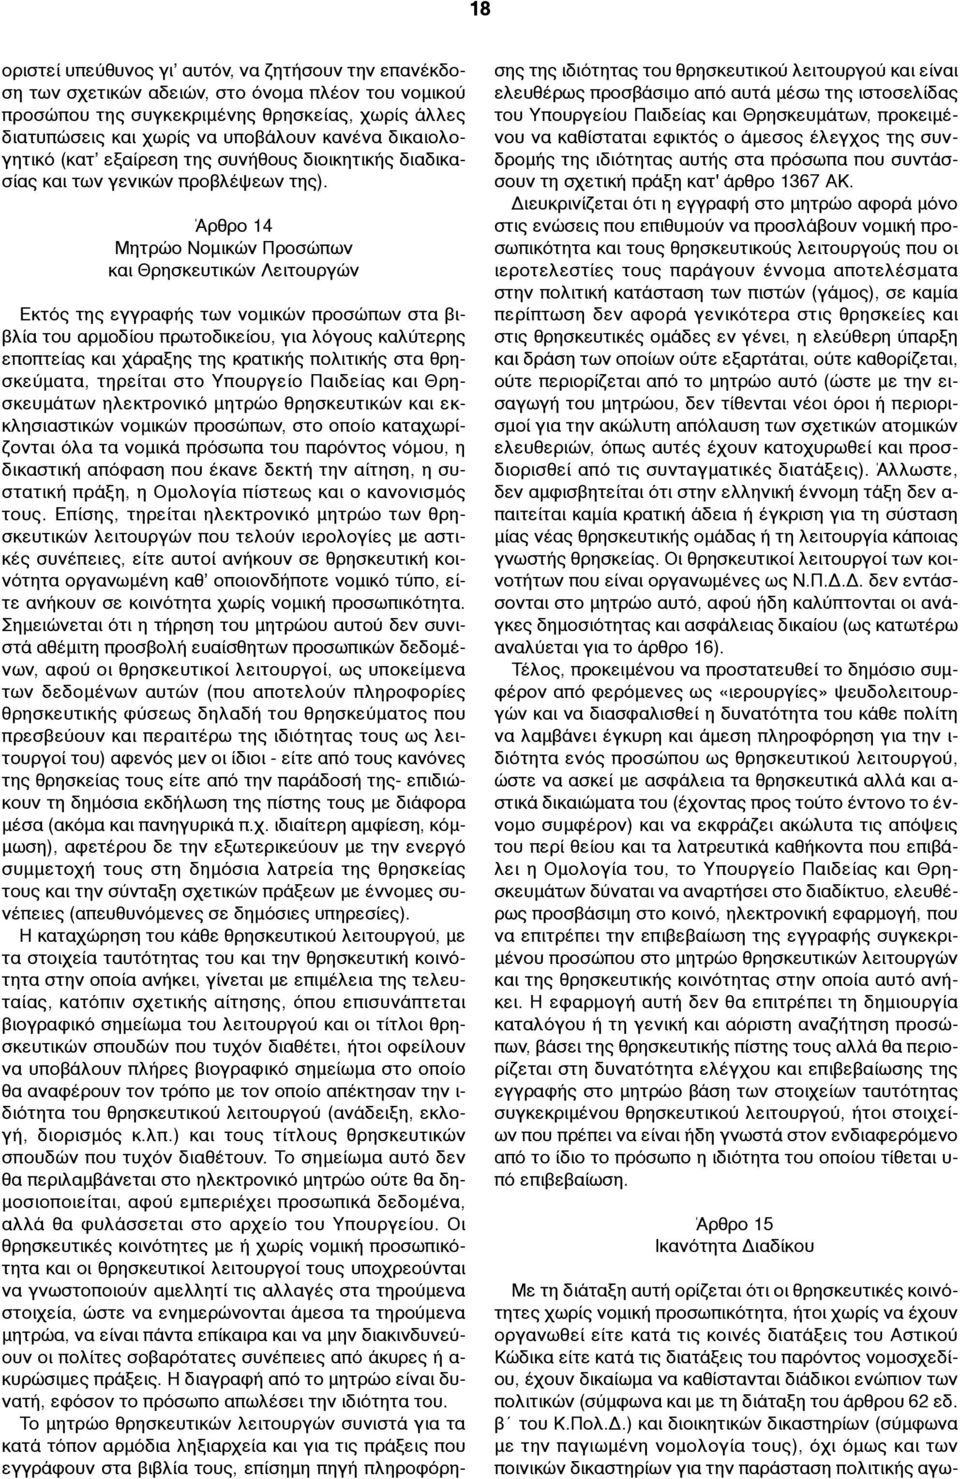 Άρθρο 14 Μητρώο Νοµικών Προσώπων και Θρησκευτικών Λειτουργών Εκτός της εγγραφής των νοµικών προσώπων στα βιβλία του αρµοδίου πρωτοδικείου, για λόγους καλύτερης εποπτείας και χάραξης της κρατικής